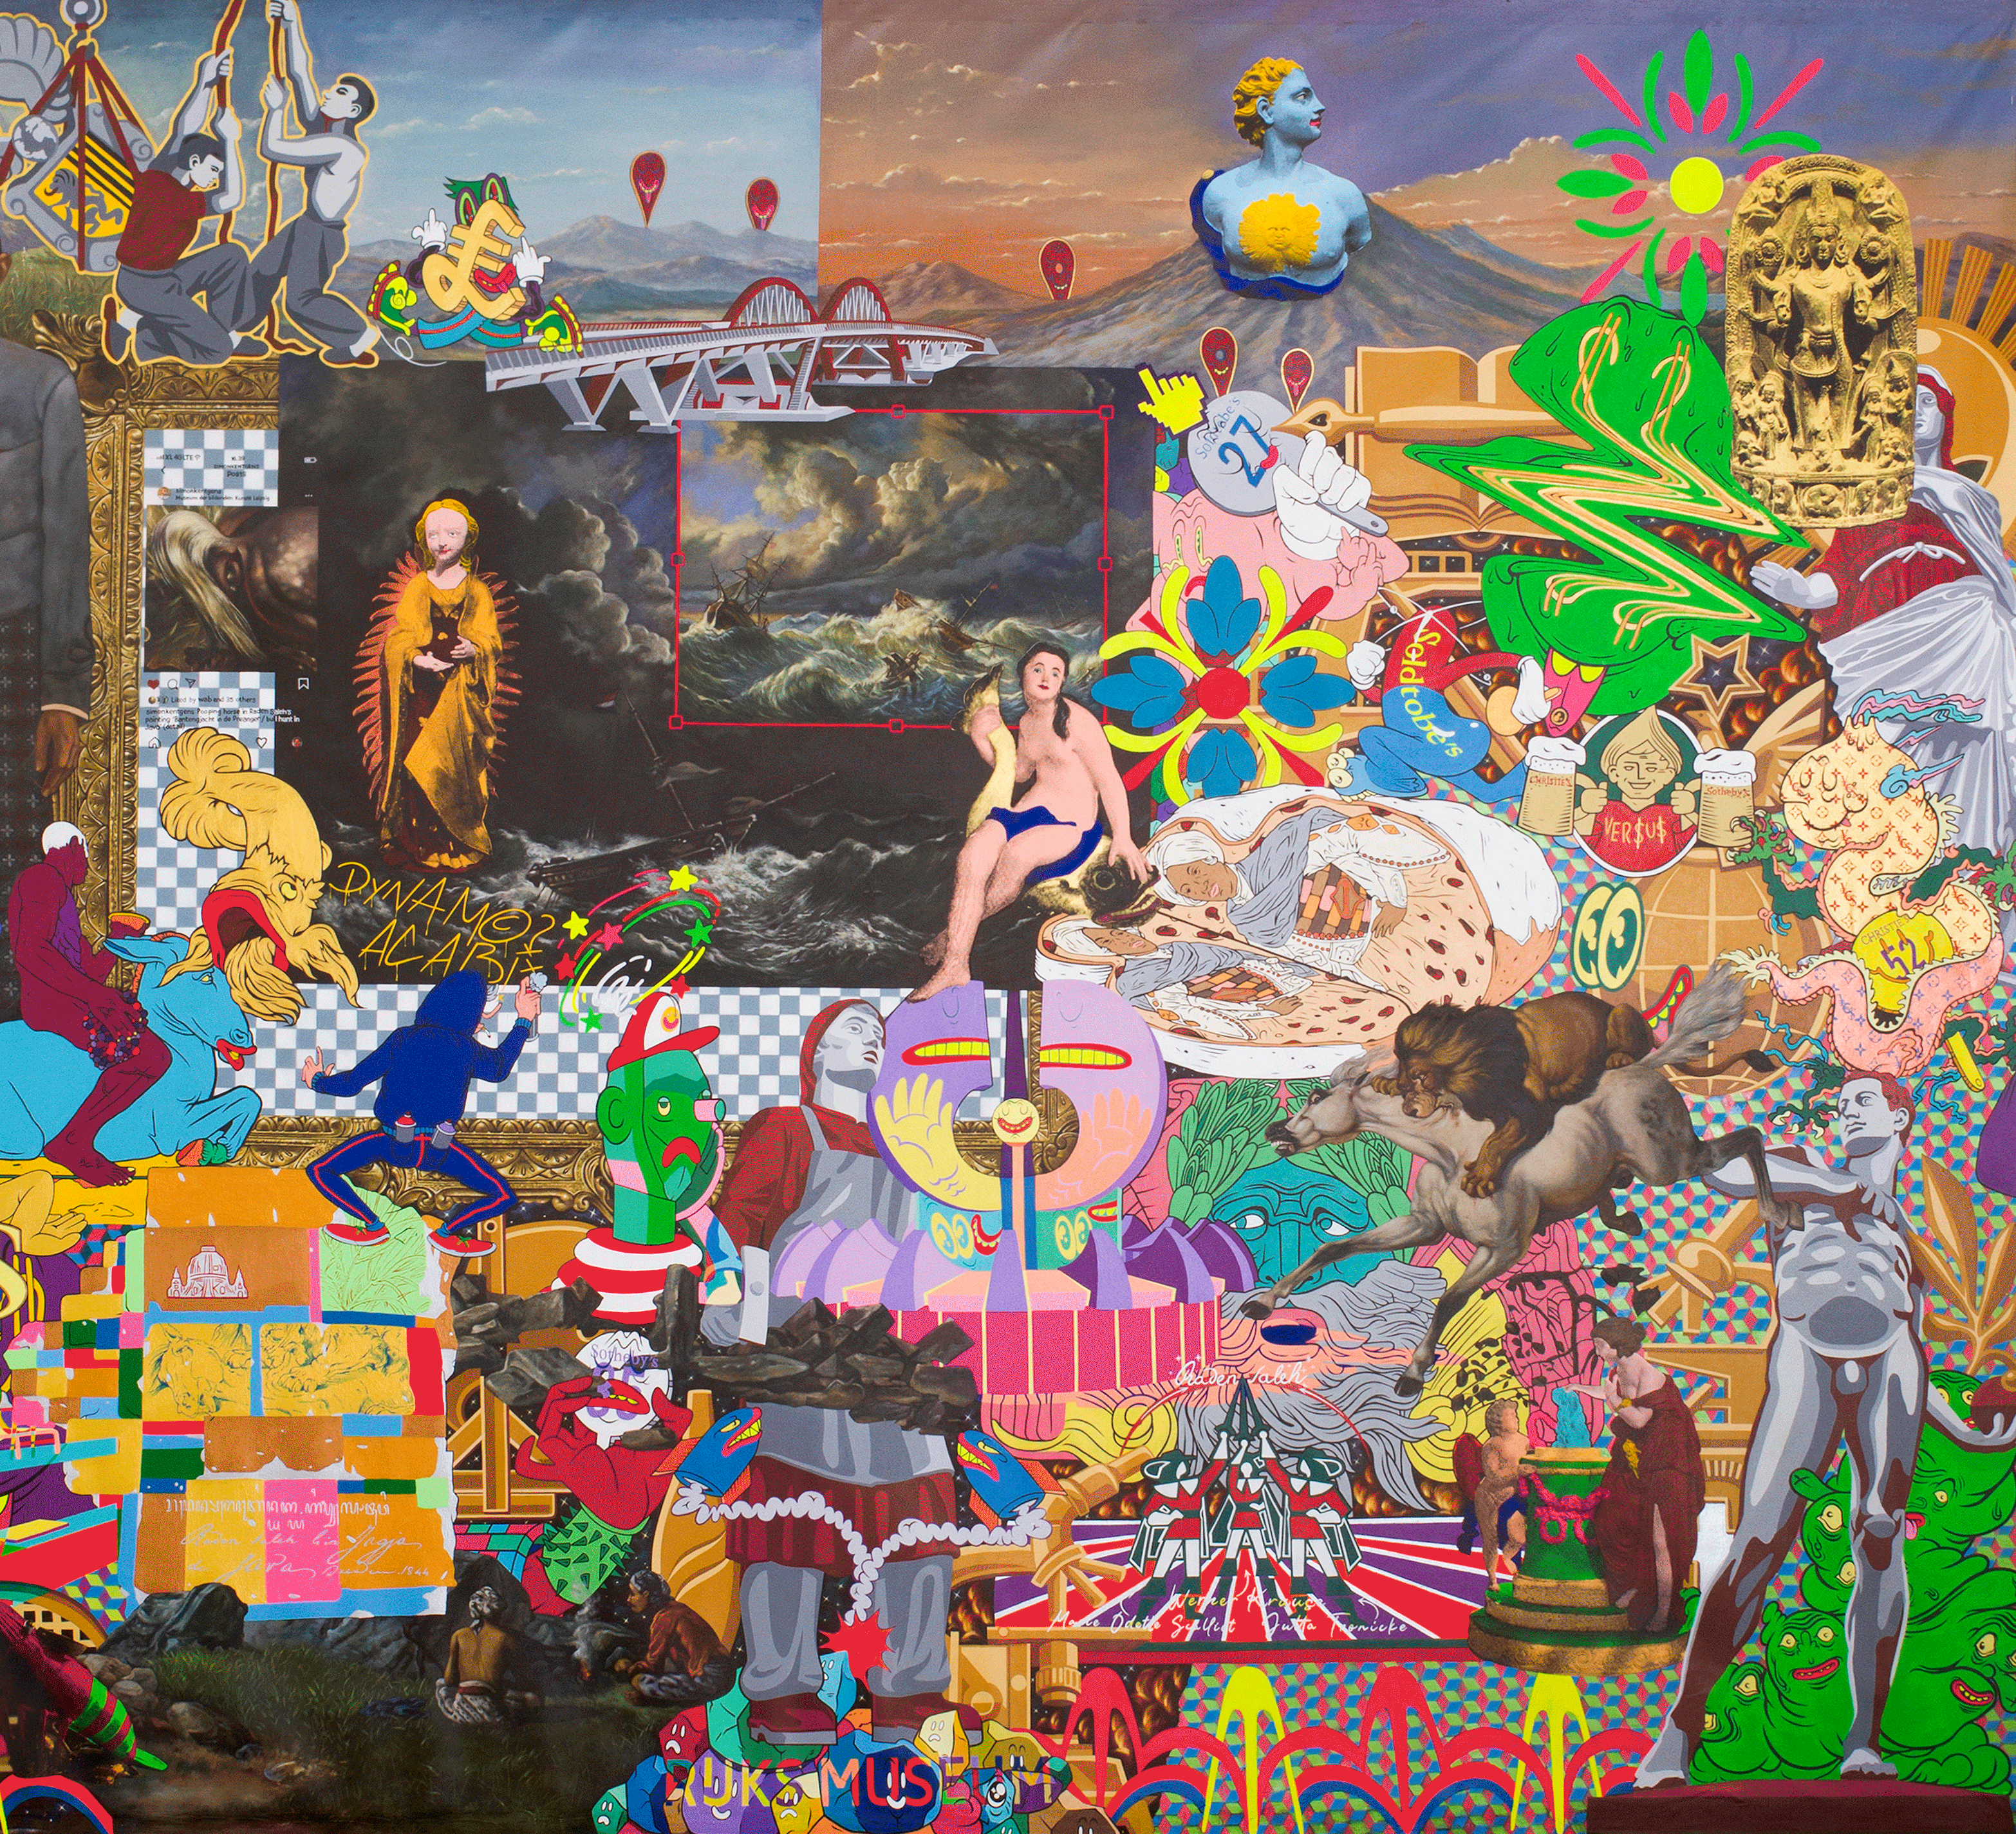 Teilansicht des acht Meter großen Gemäldes in der modernen Bildsprache des urbanen Indonesiens, zwischen Indo-Pop, Graffiti und Comic Art. Der indonesische Künstler Hahan verarbeitet seine Sicht auf Dresden und Raden Saleh für die Auktion "The Curious Deal".